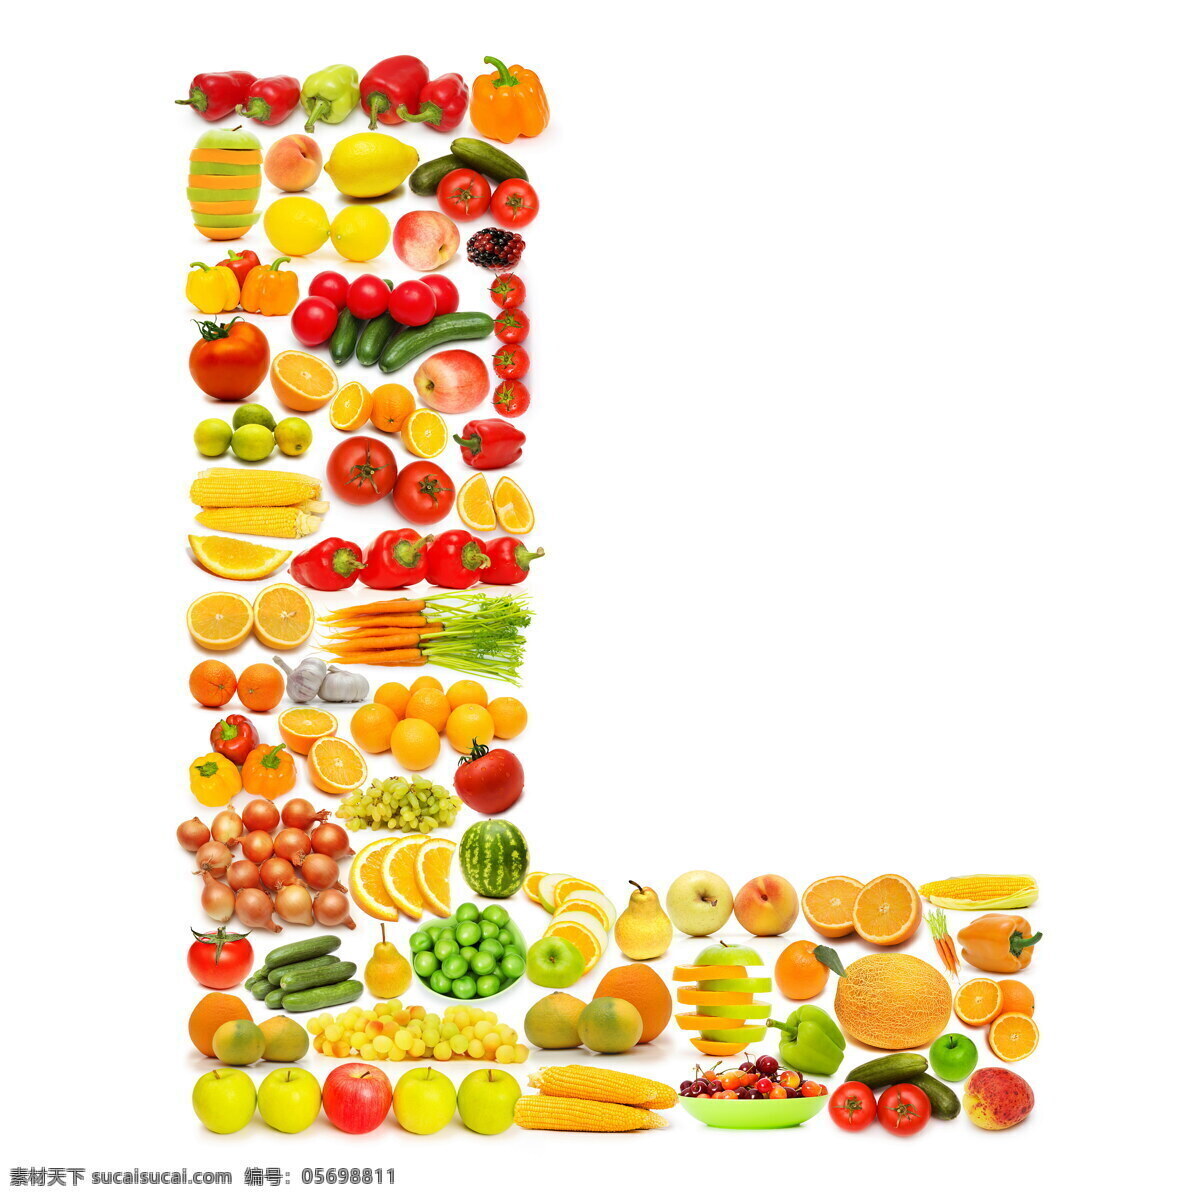 蔬菜水果 组成 字母 l 辣椒 葡萄 黄瓜 橙子 香蕉 蔬菜 水果 食物 水果蔬菜 餐饮美食 书画文字 文化艺术 白色